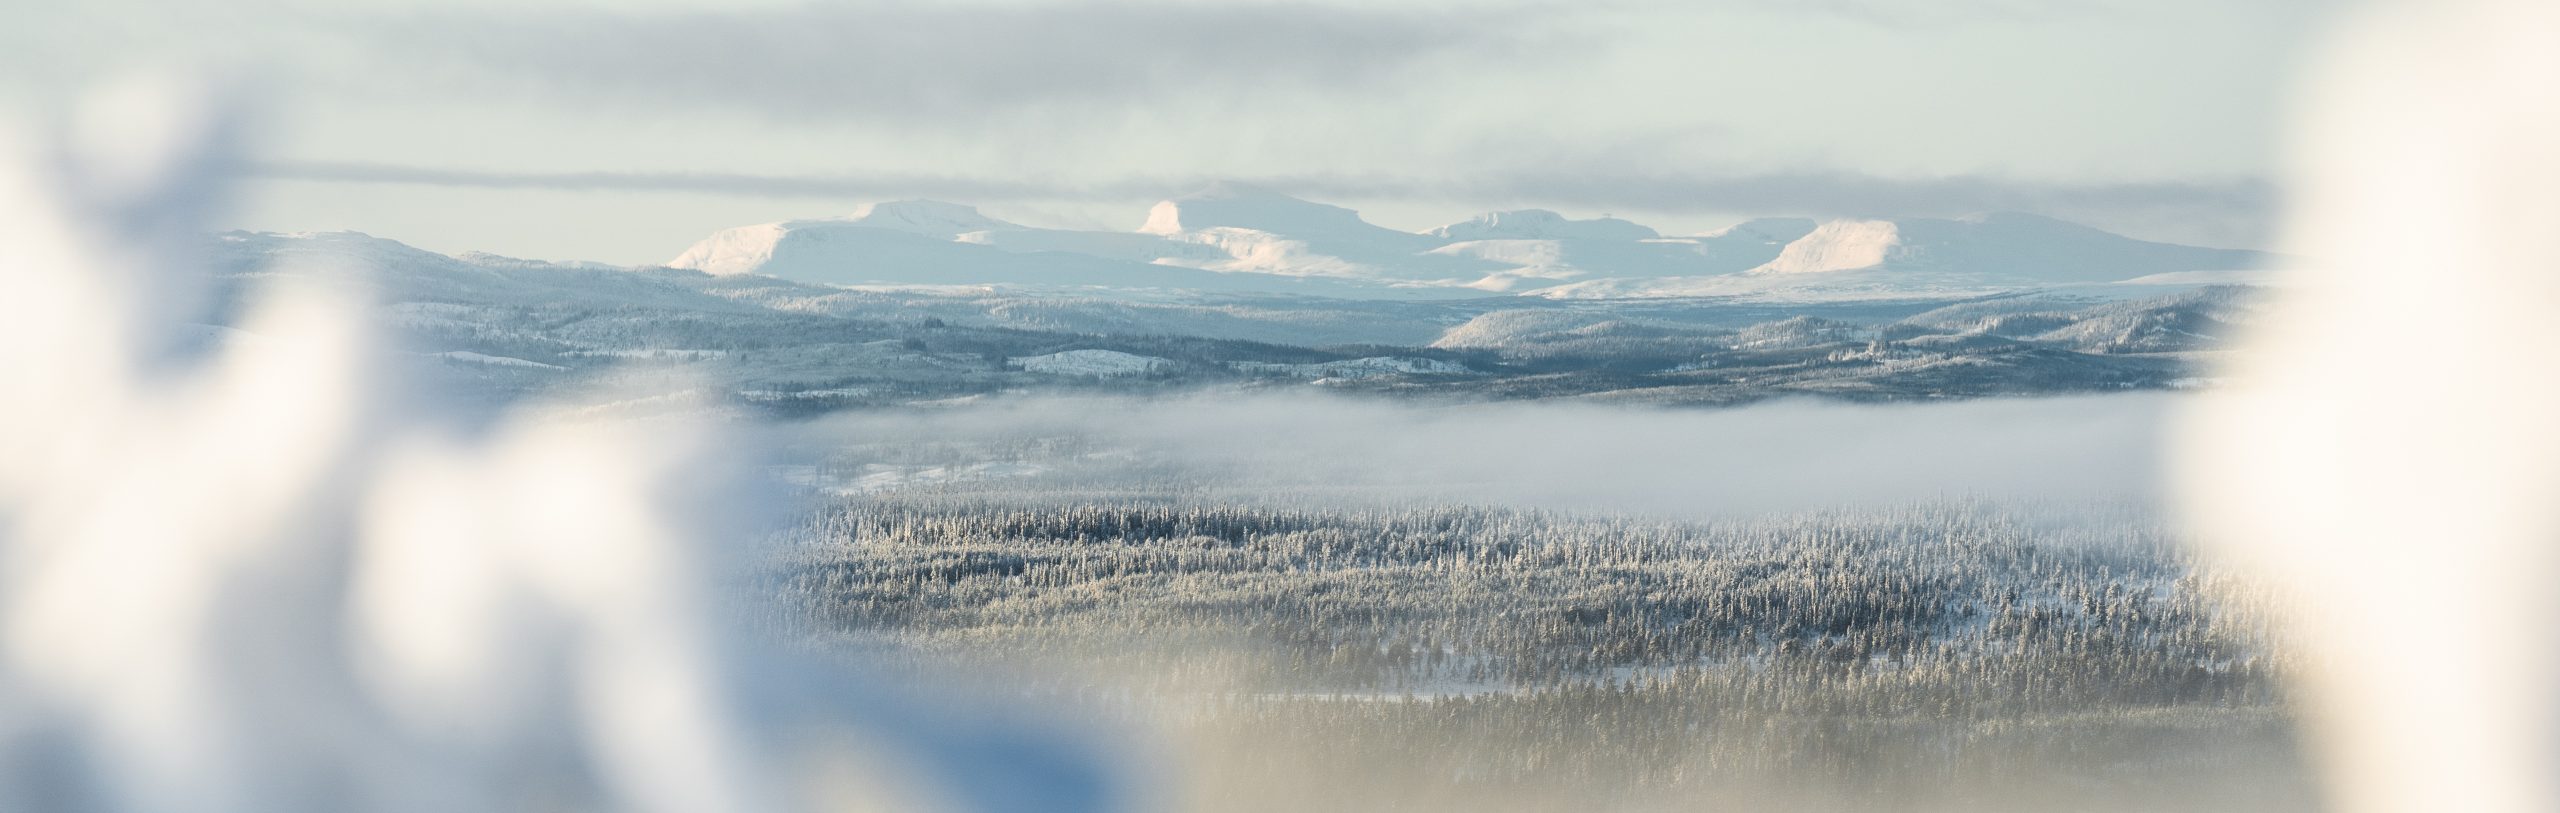 Schwedisch Lappland im Winter - Fjäll Panorama